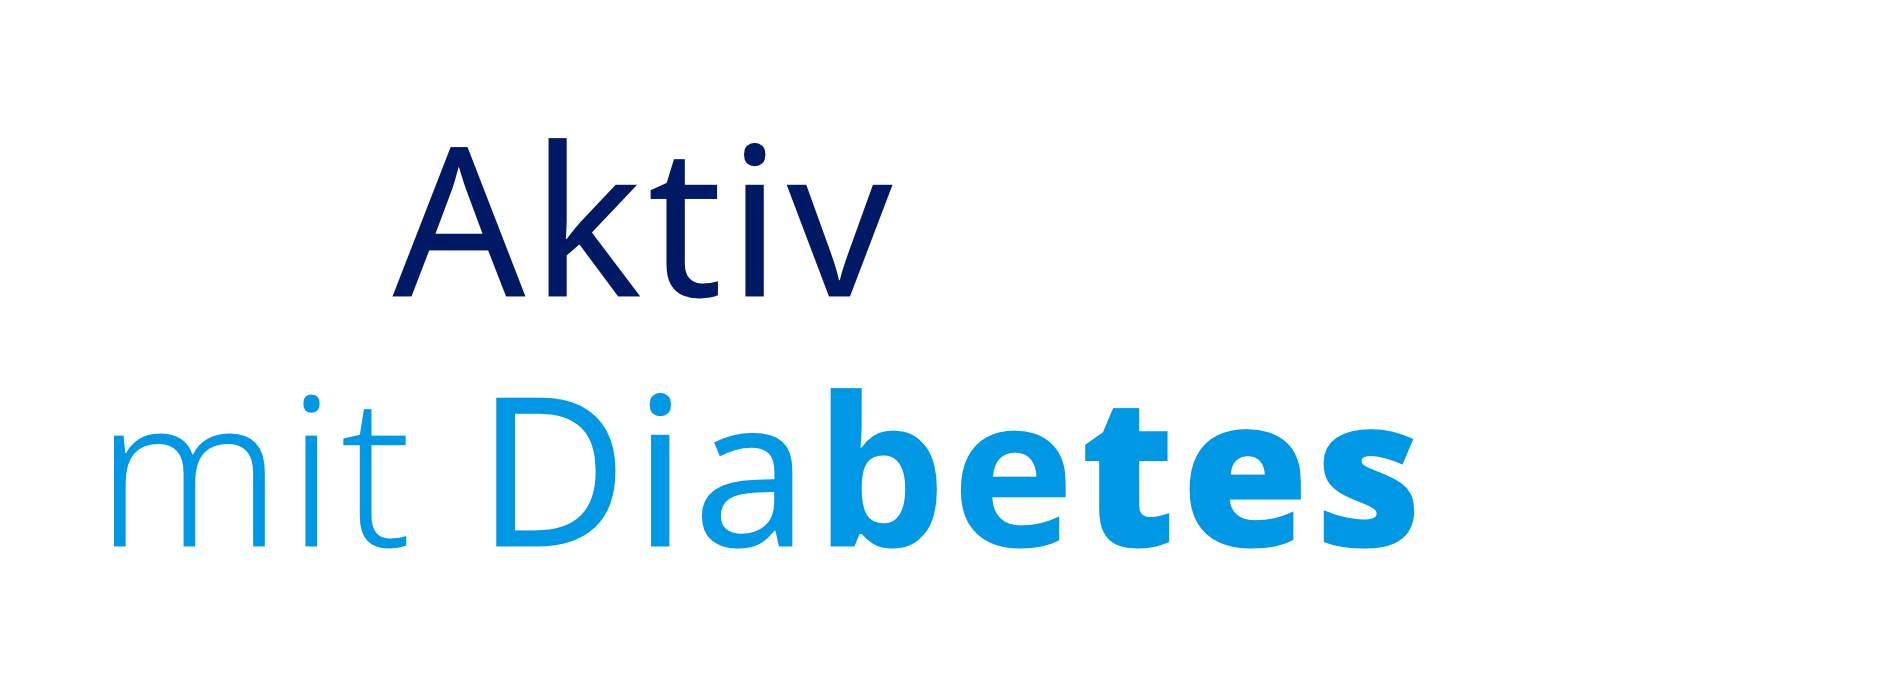 text_aktiv mit diabetes